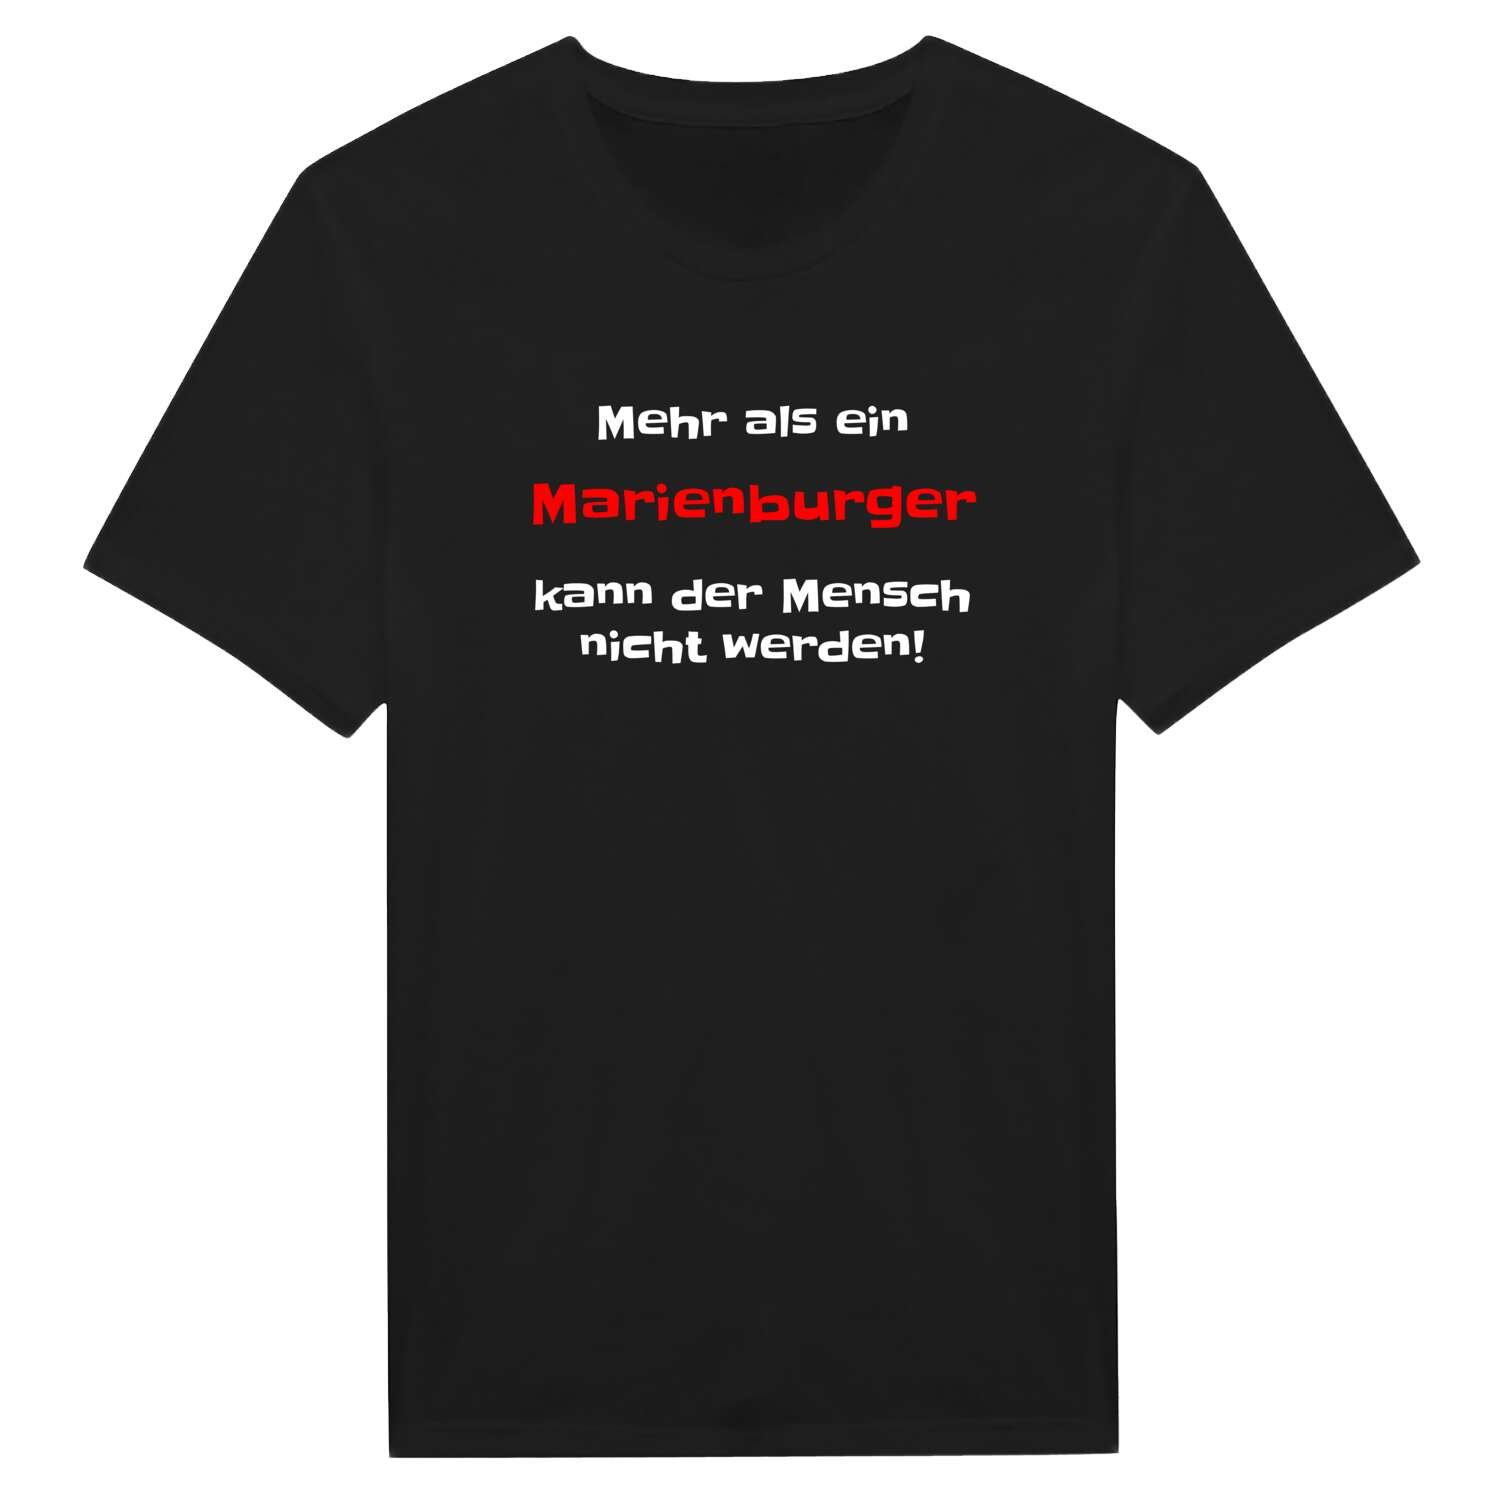 Marienburg T-Shirt »Mehr als ein«